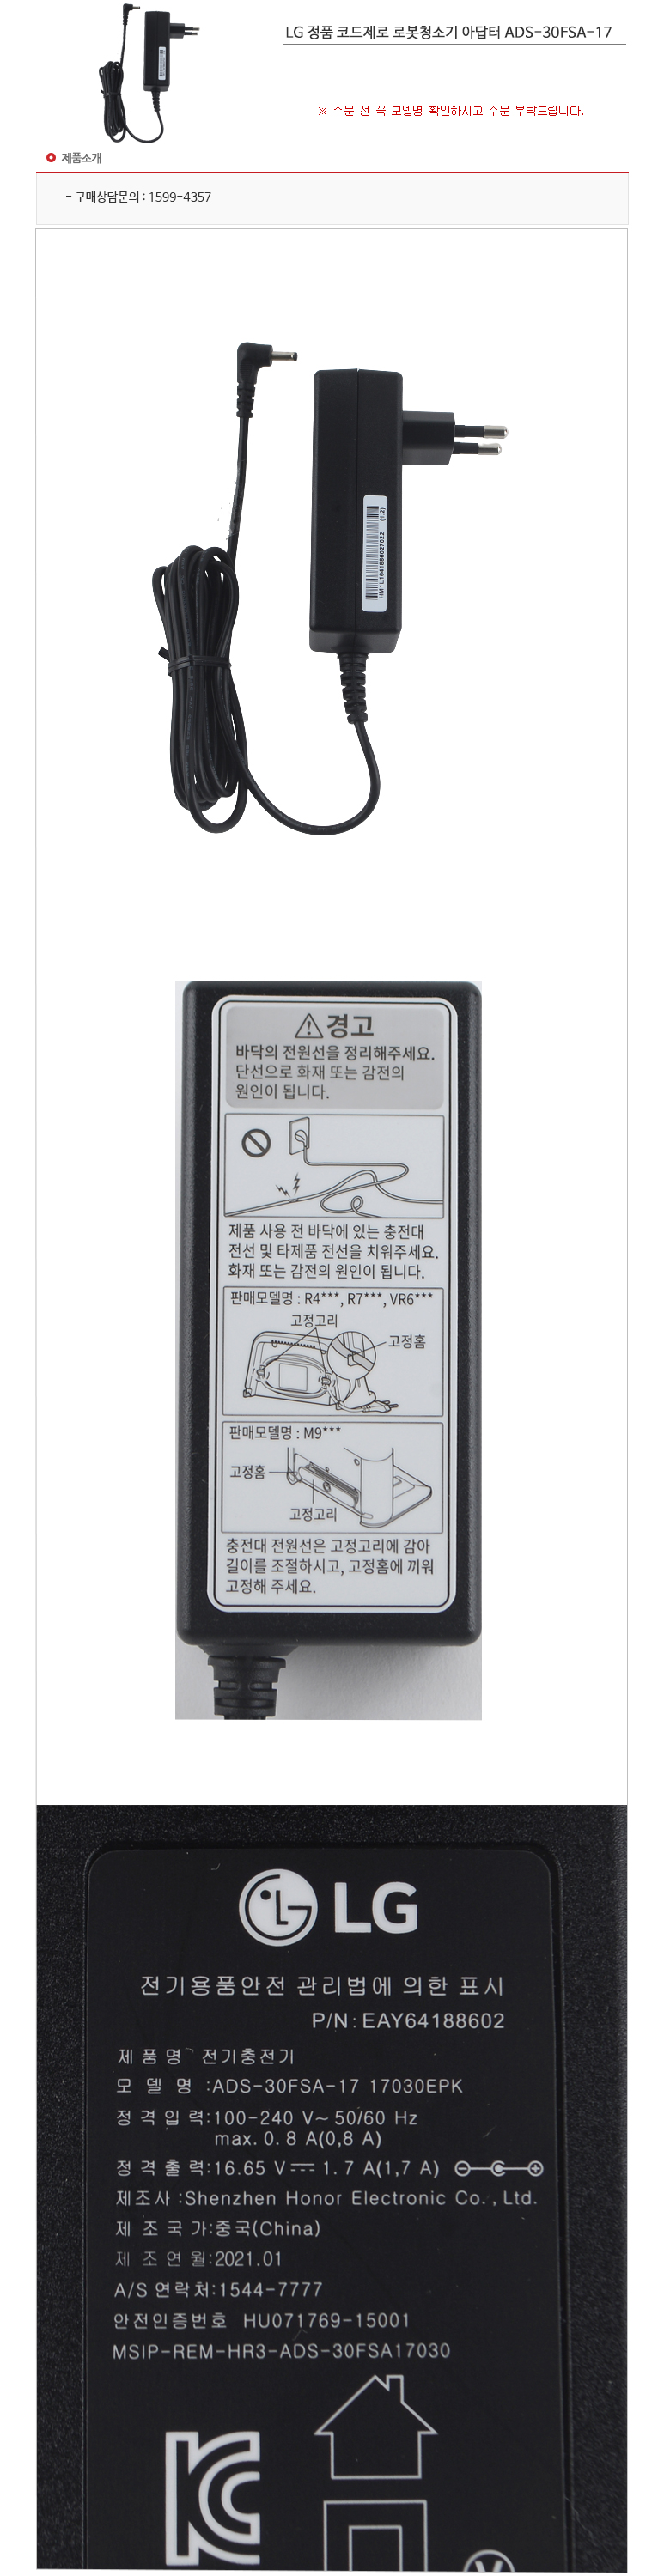 LG 정품 코드제로 로봇청소기 아답터 ADS-30FSA-17